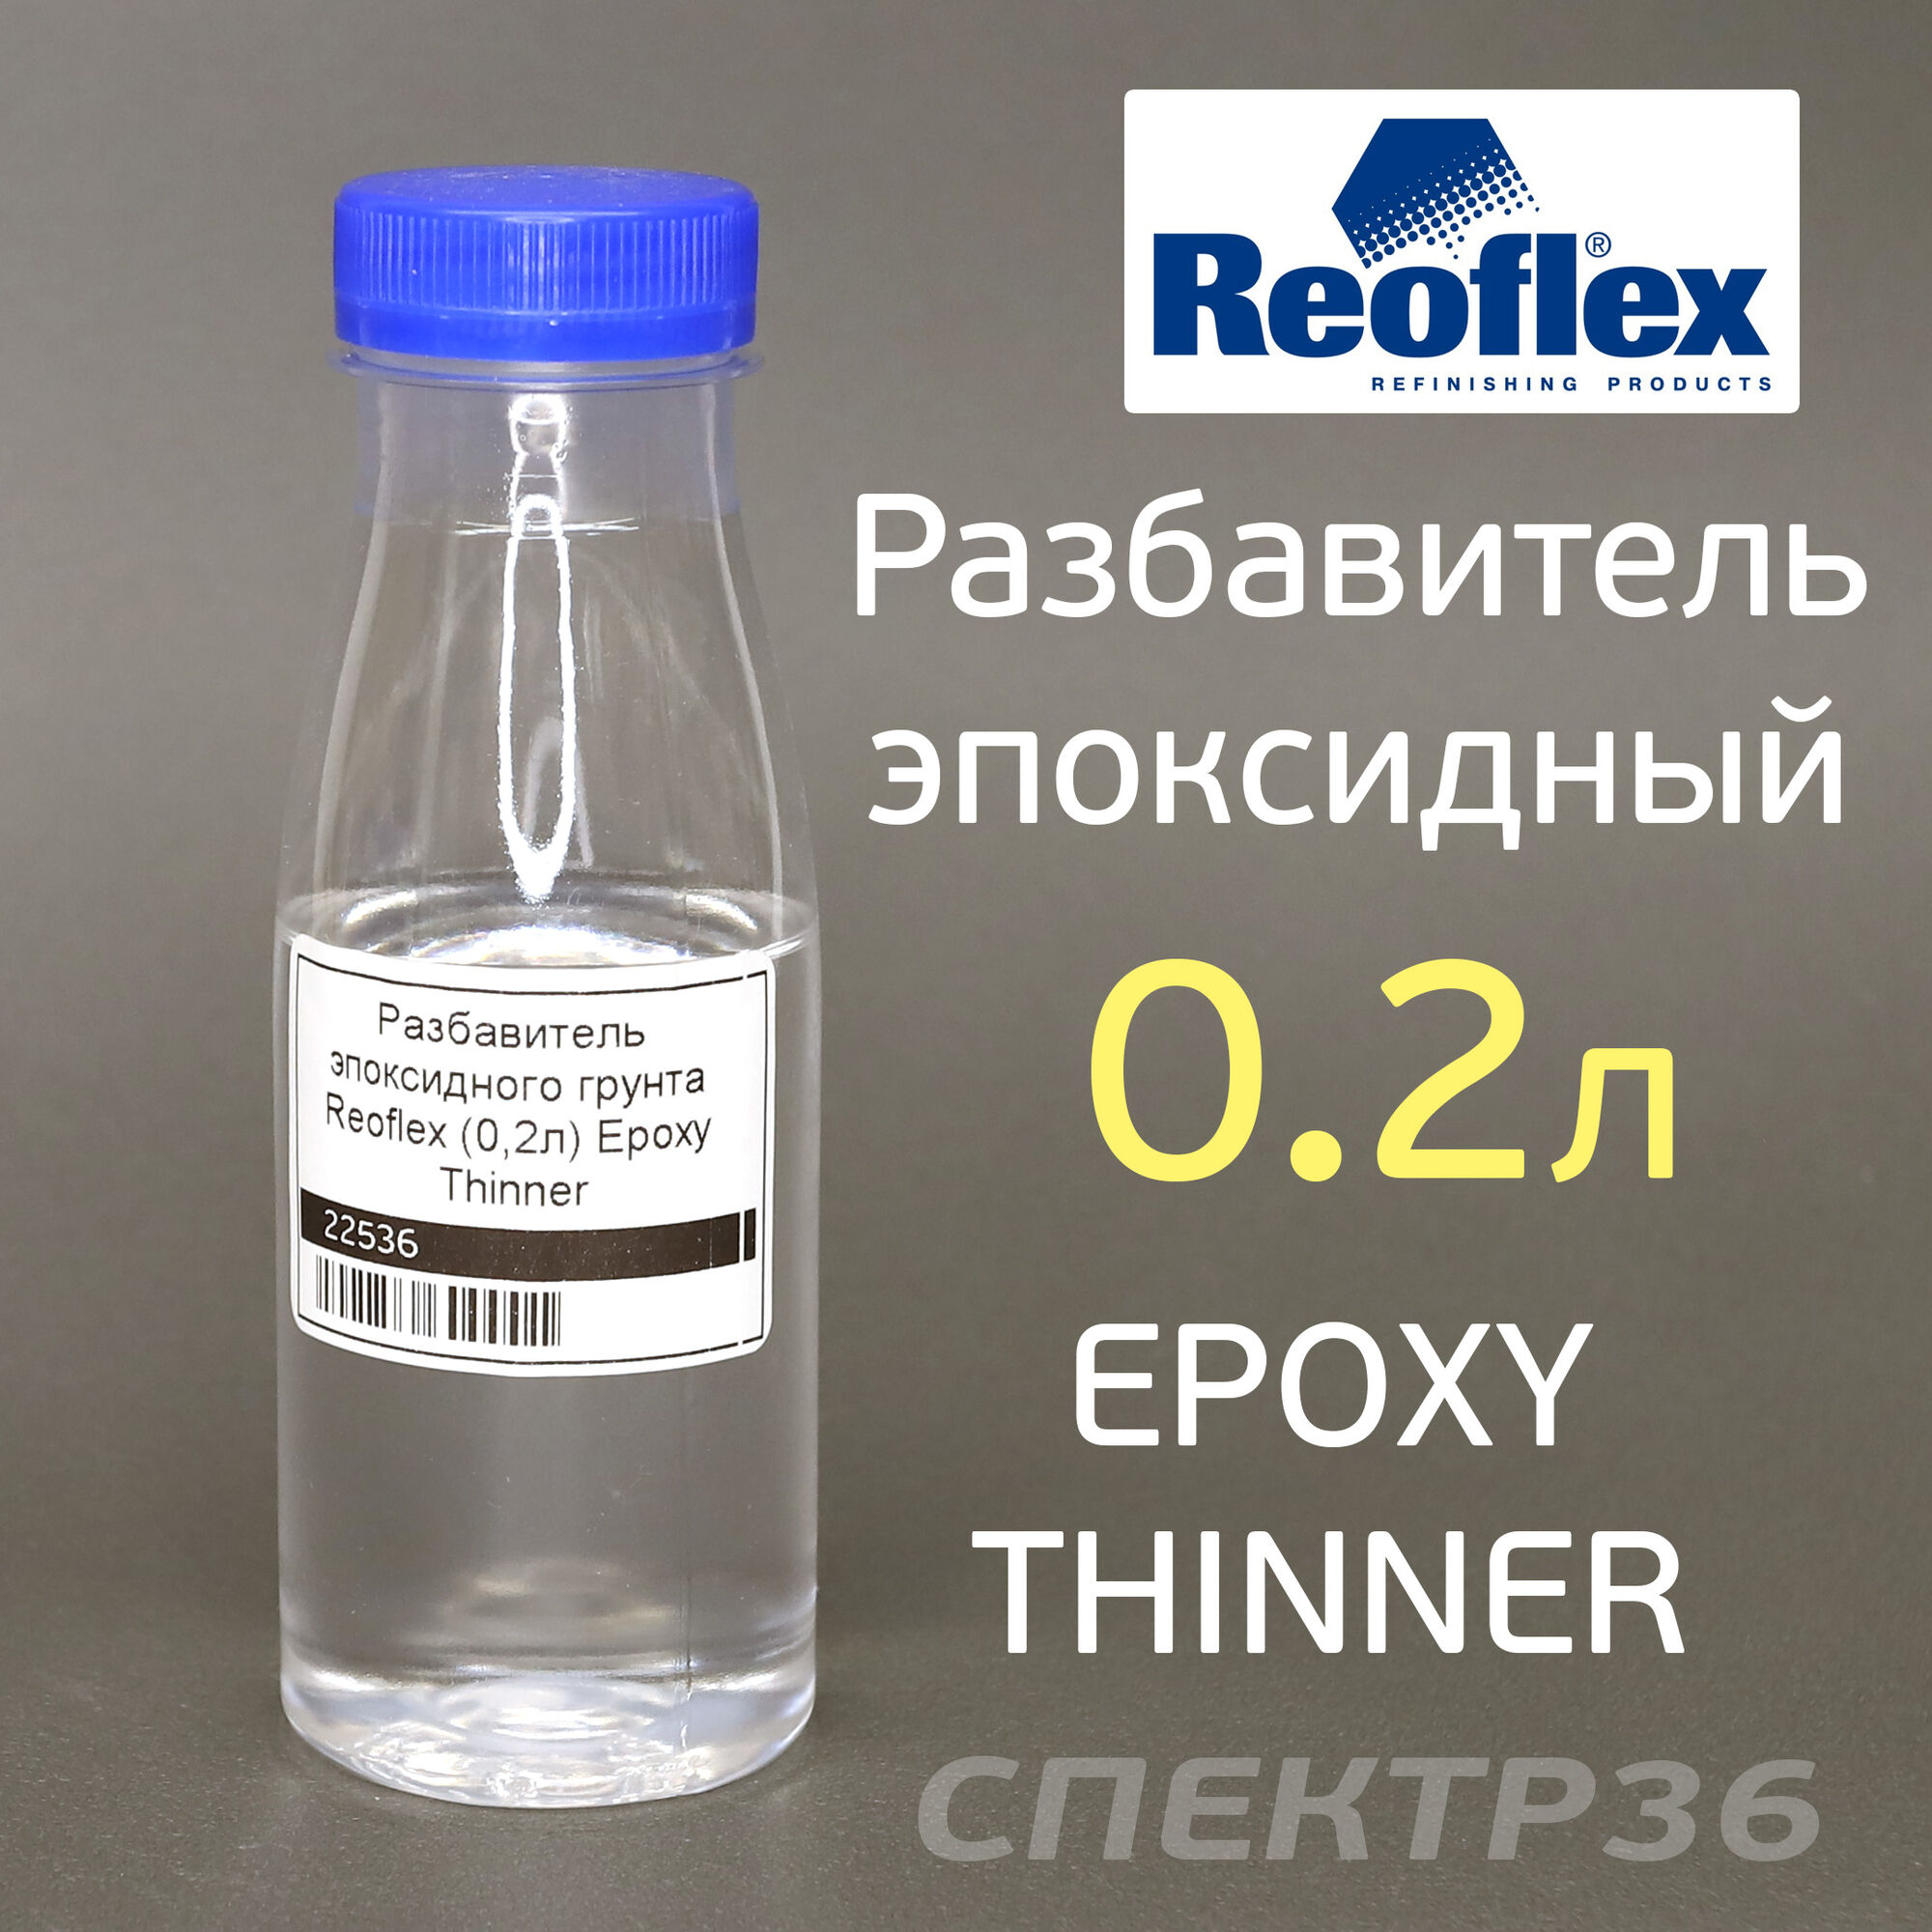 Разбавитель эпоксидного грунта (0.2л) Reoflex